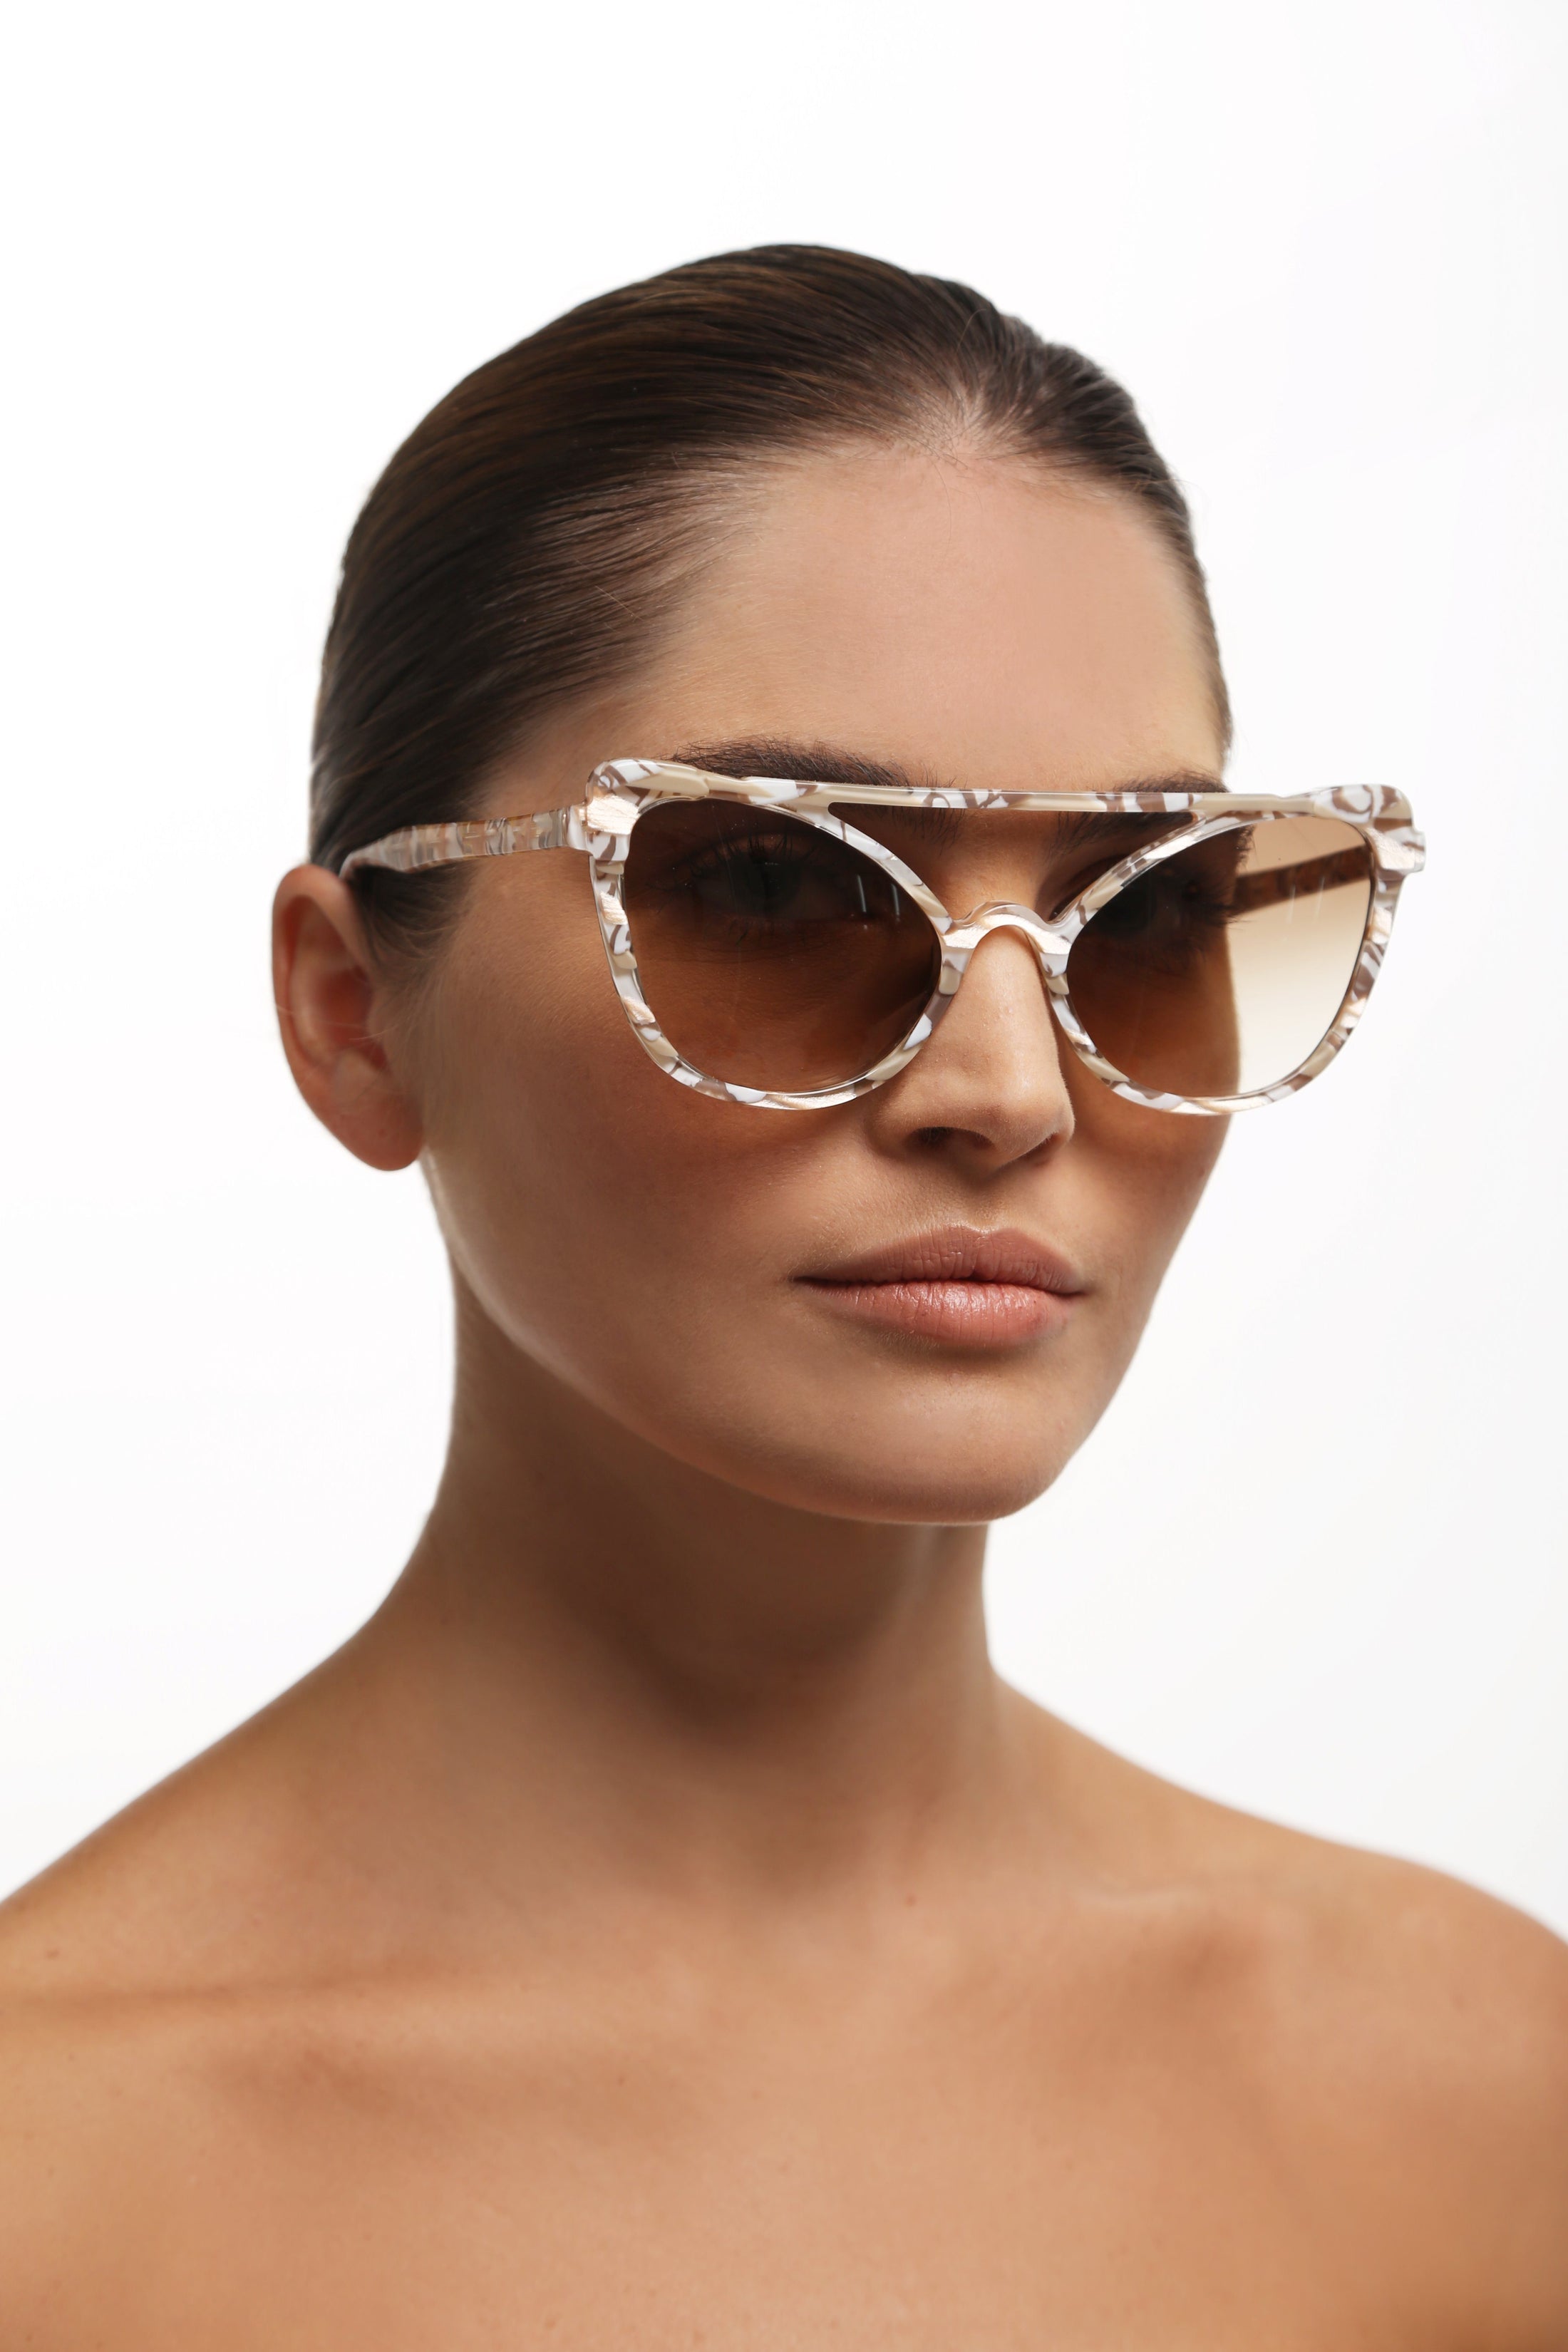 Gattara Sun - Buff - Cibelle Eyewear